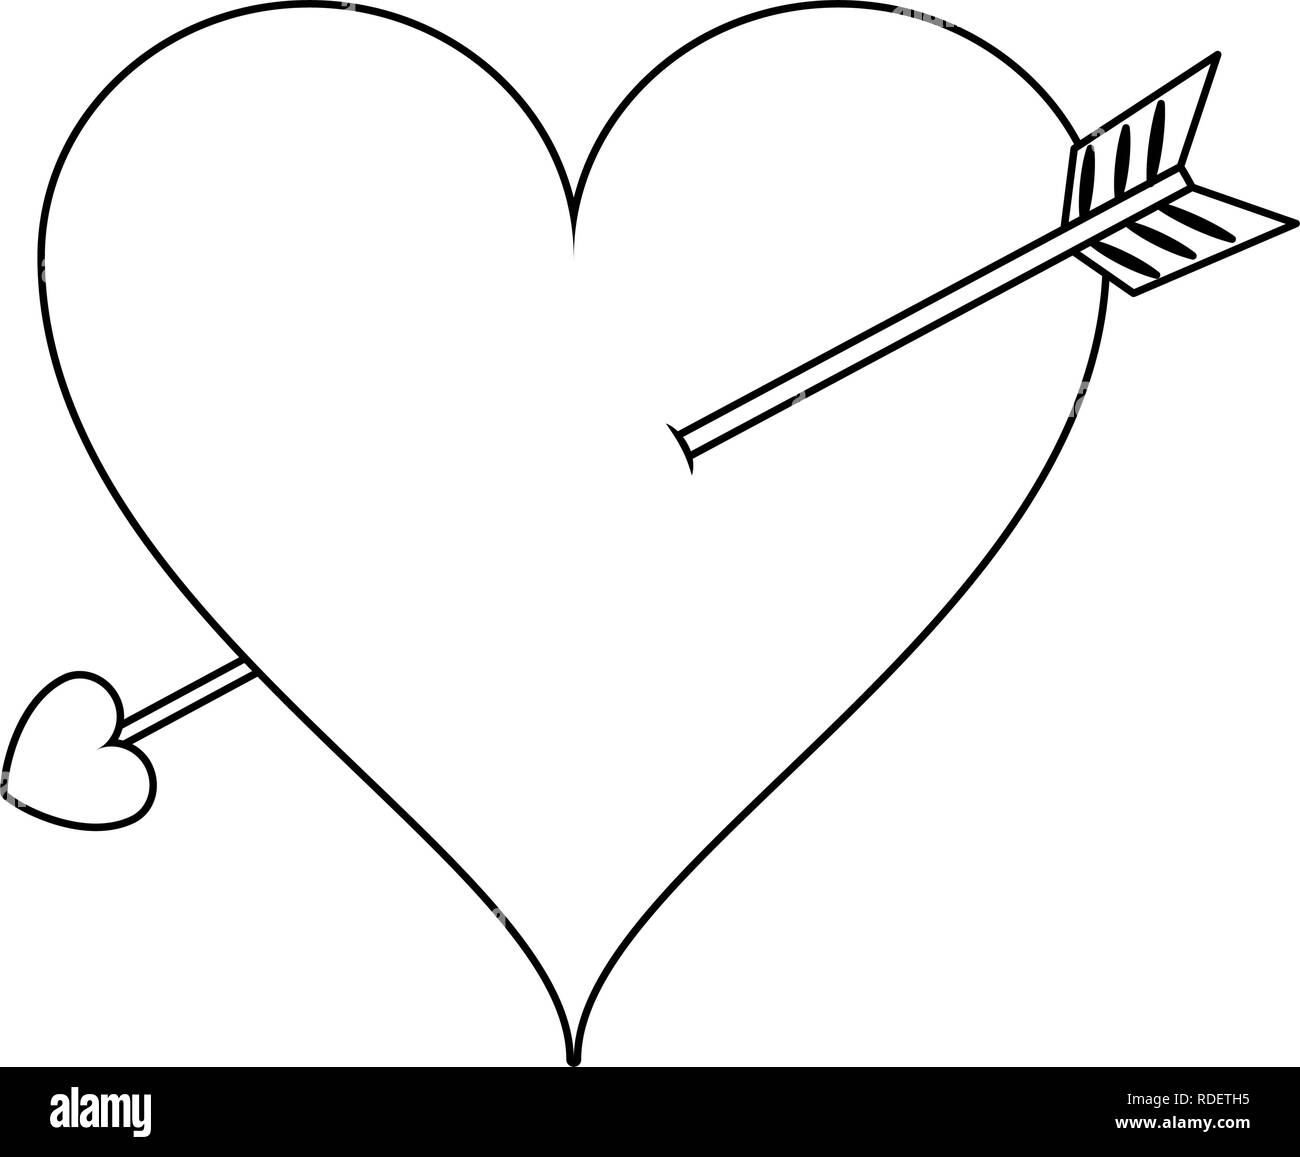 Heart with bow arrow Stock Vector